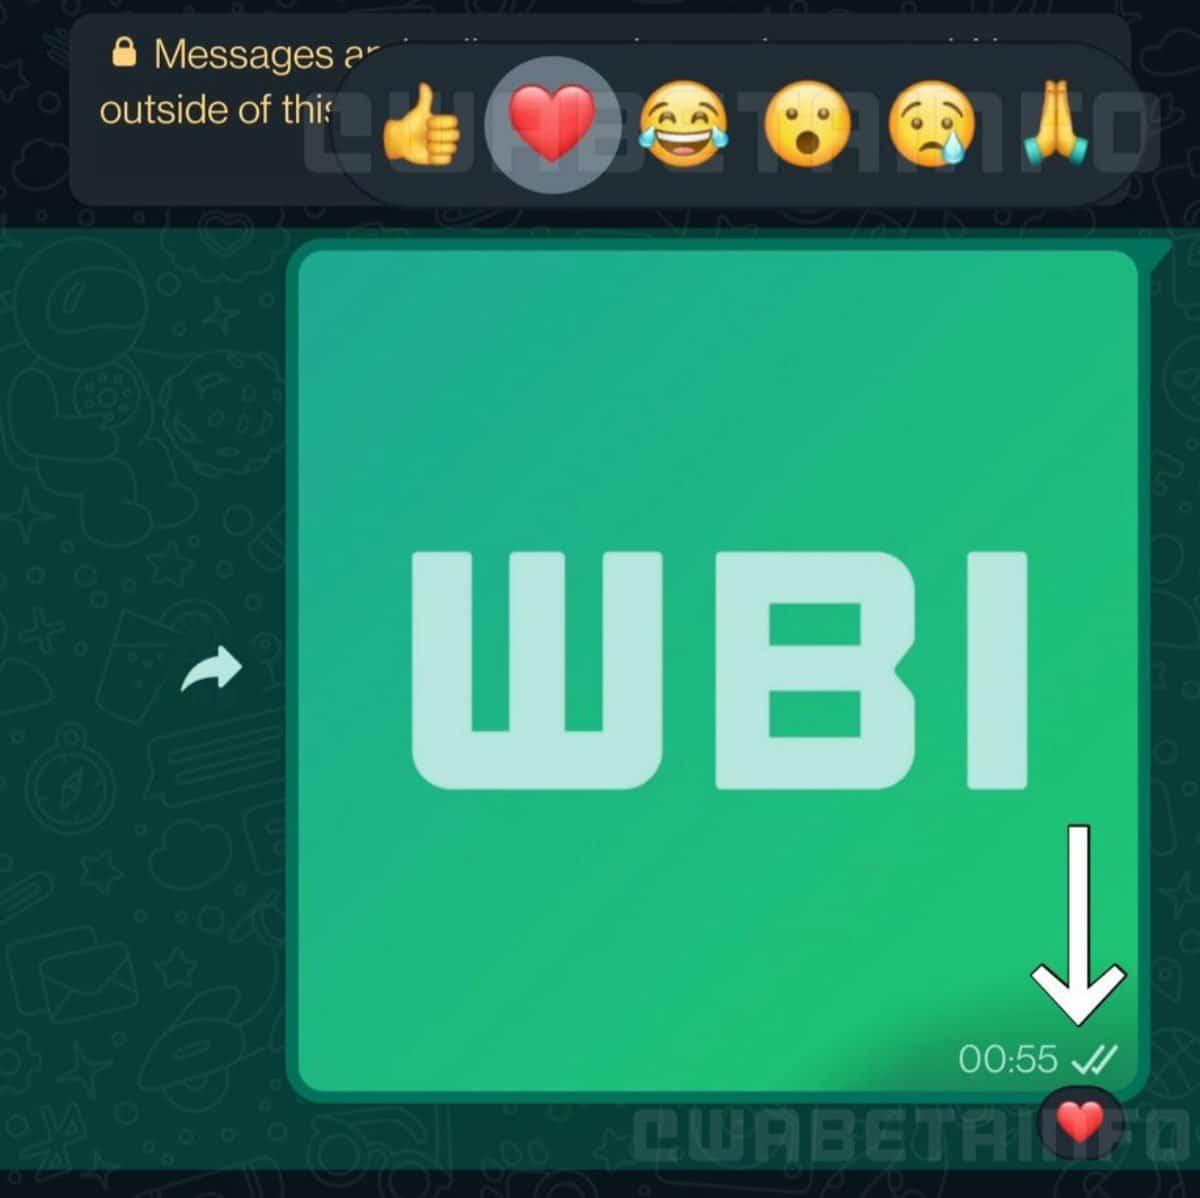 WhatsApp : les réactions aux messages via des émojis arrivent ! applications